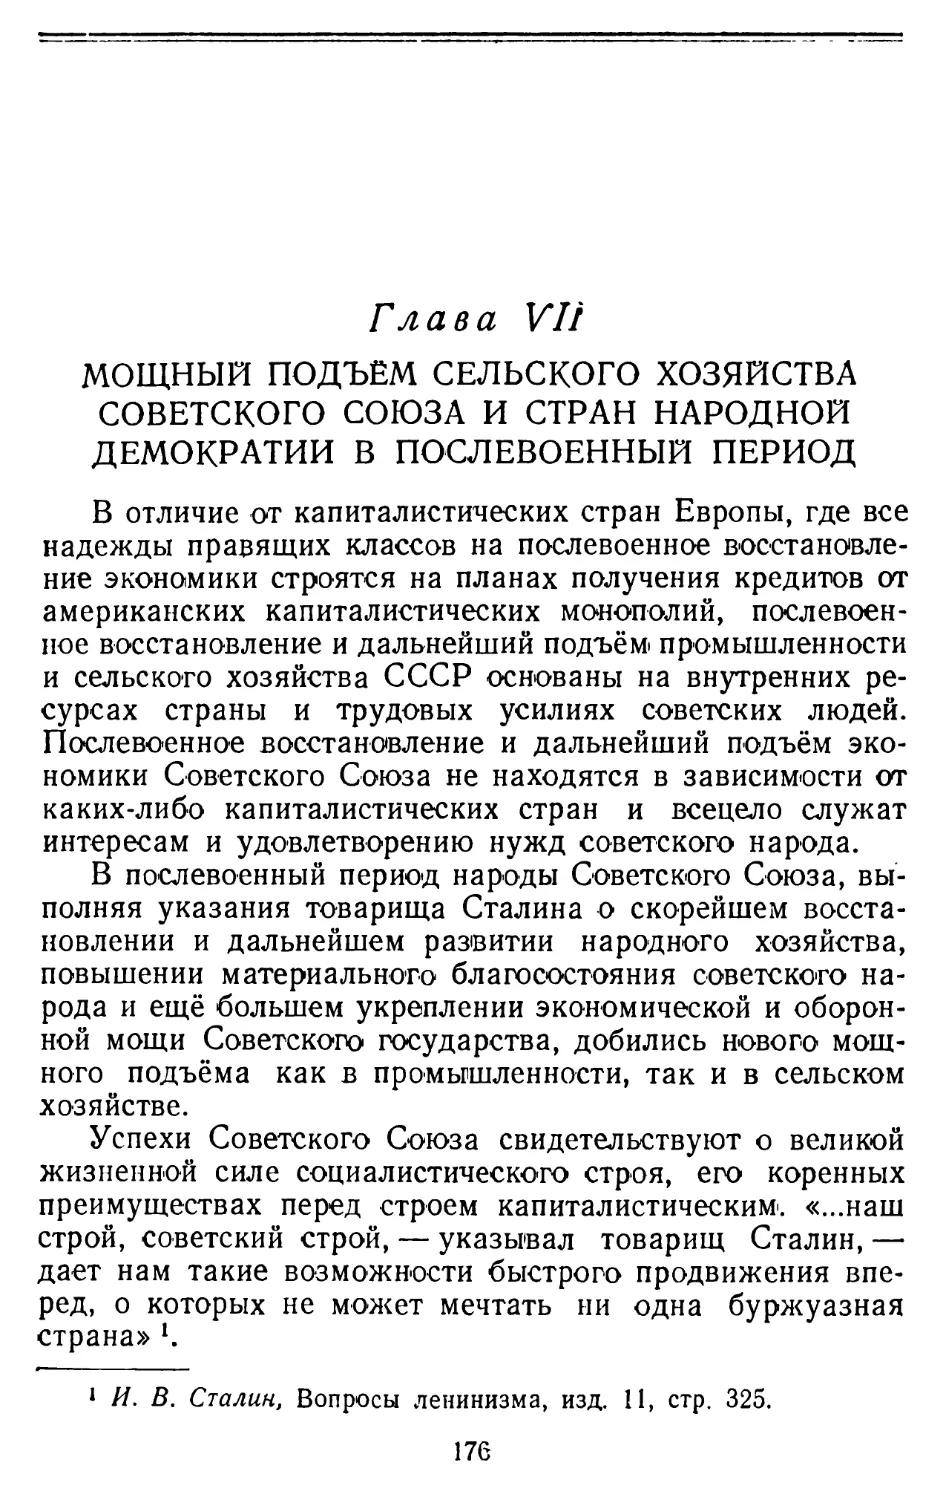 Глава VII. Мощный подъём сельского хозяйства Советского Союза и стран народной демократии в послевоенный период